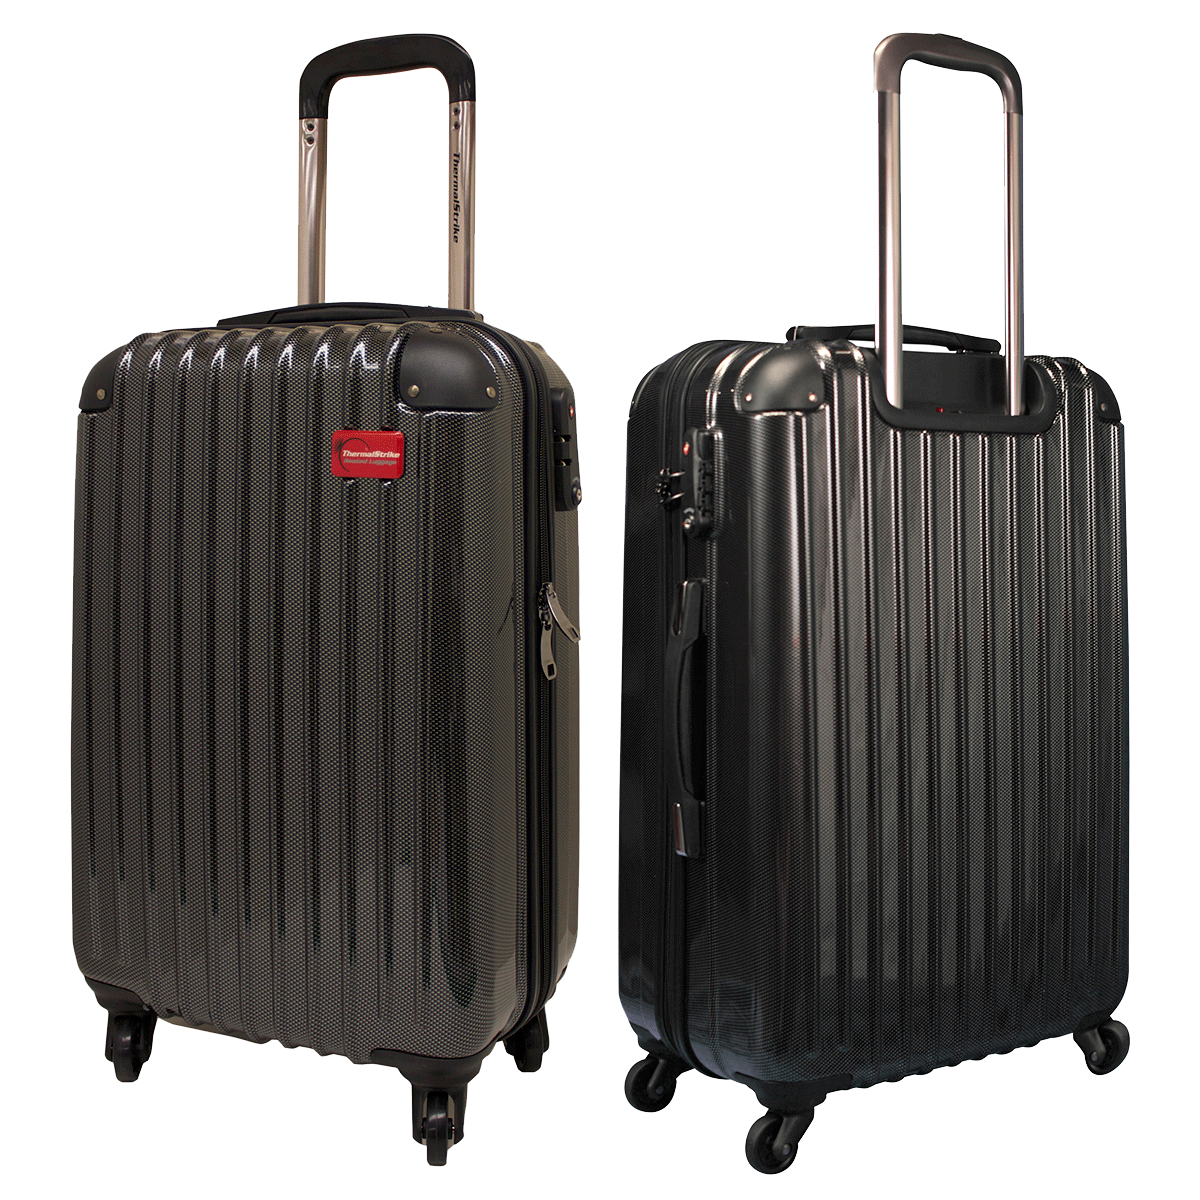 Shiny Black Luggage